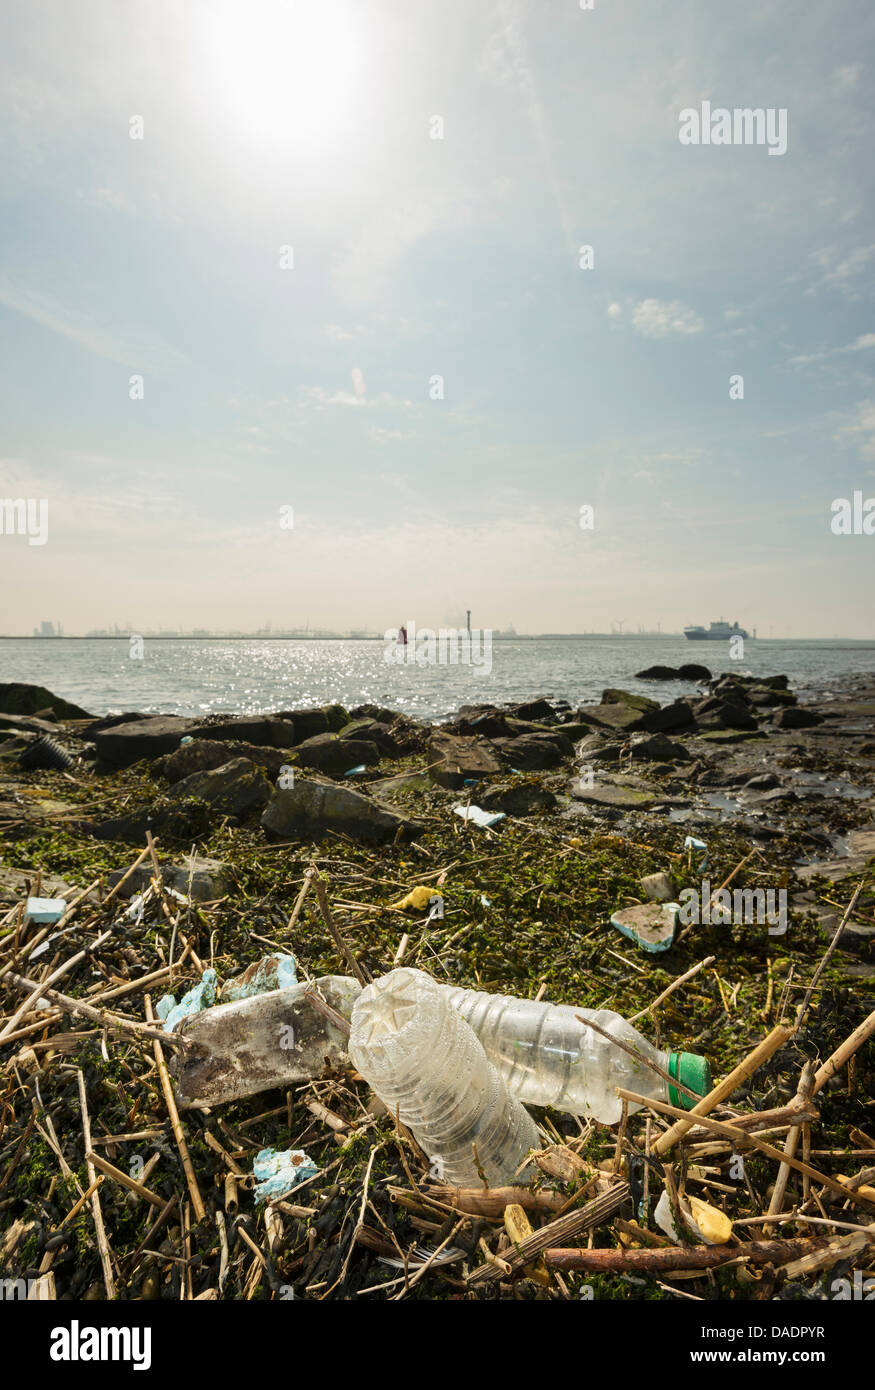 Washed up plastic bottles on wasteland, Rotterdam harbor Stock Photo